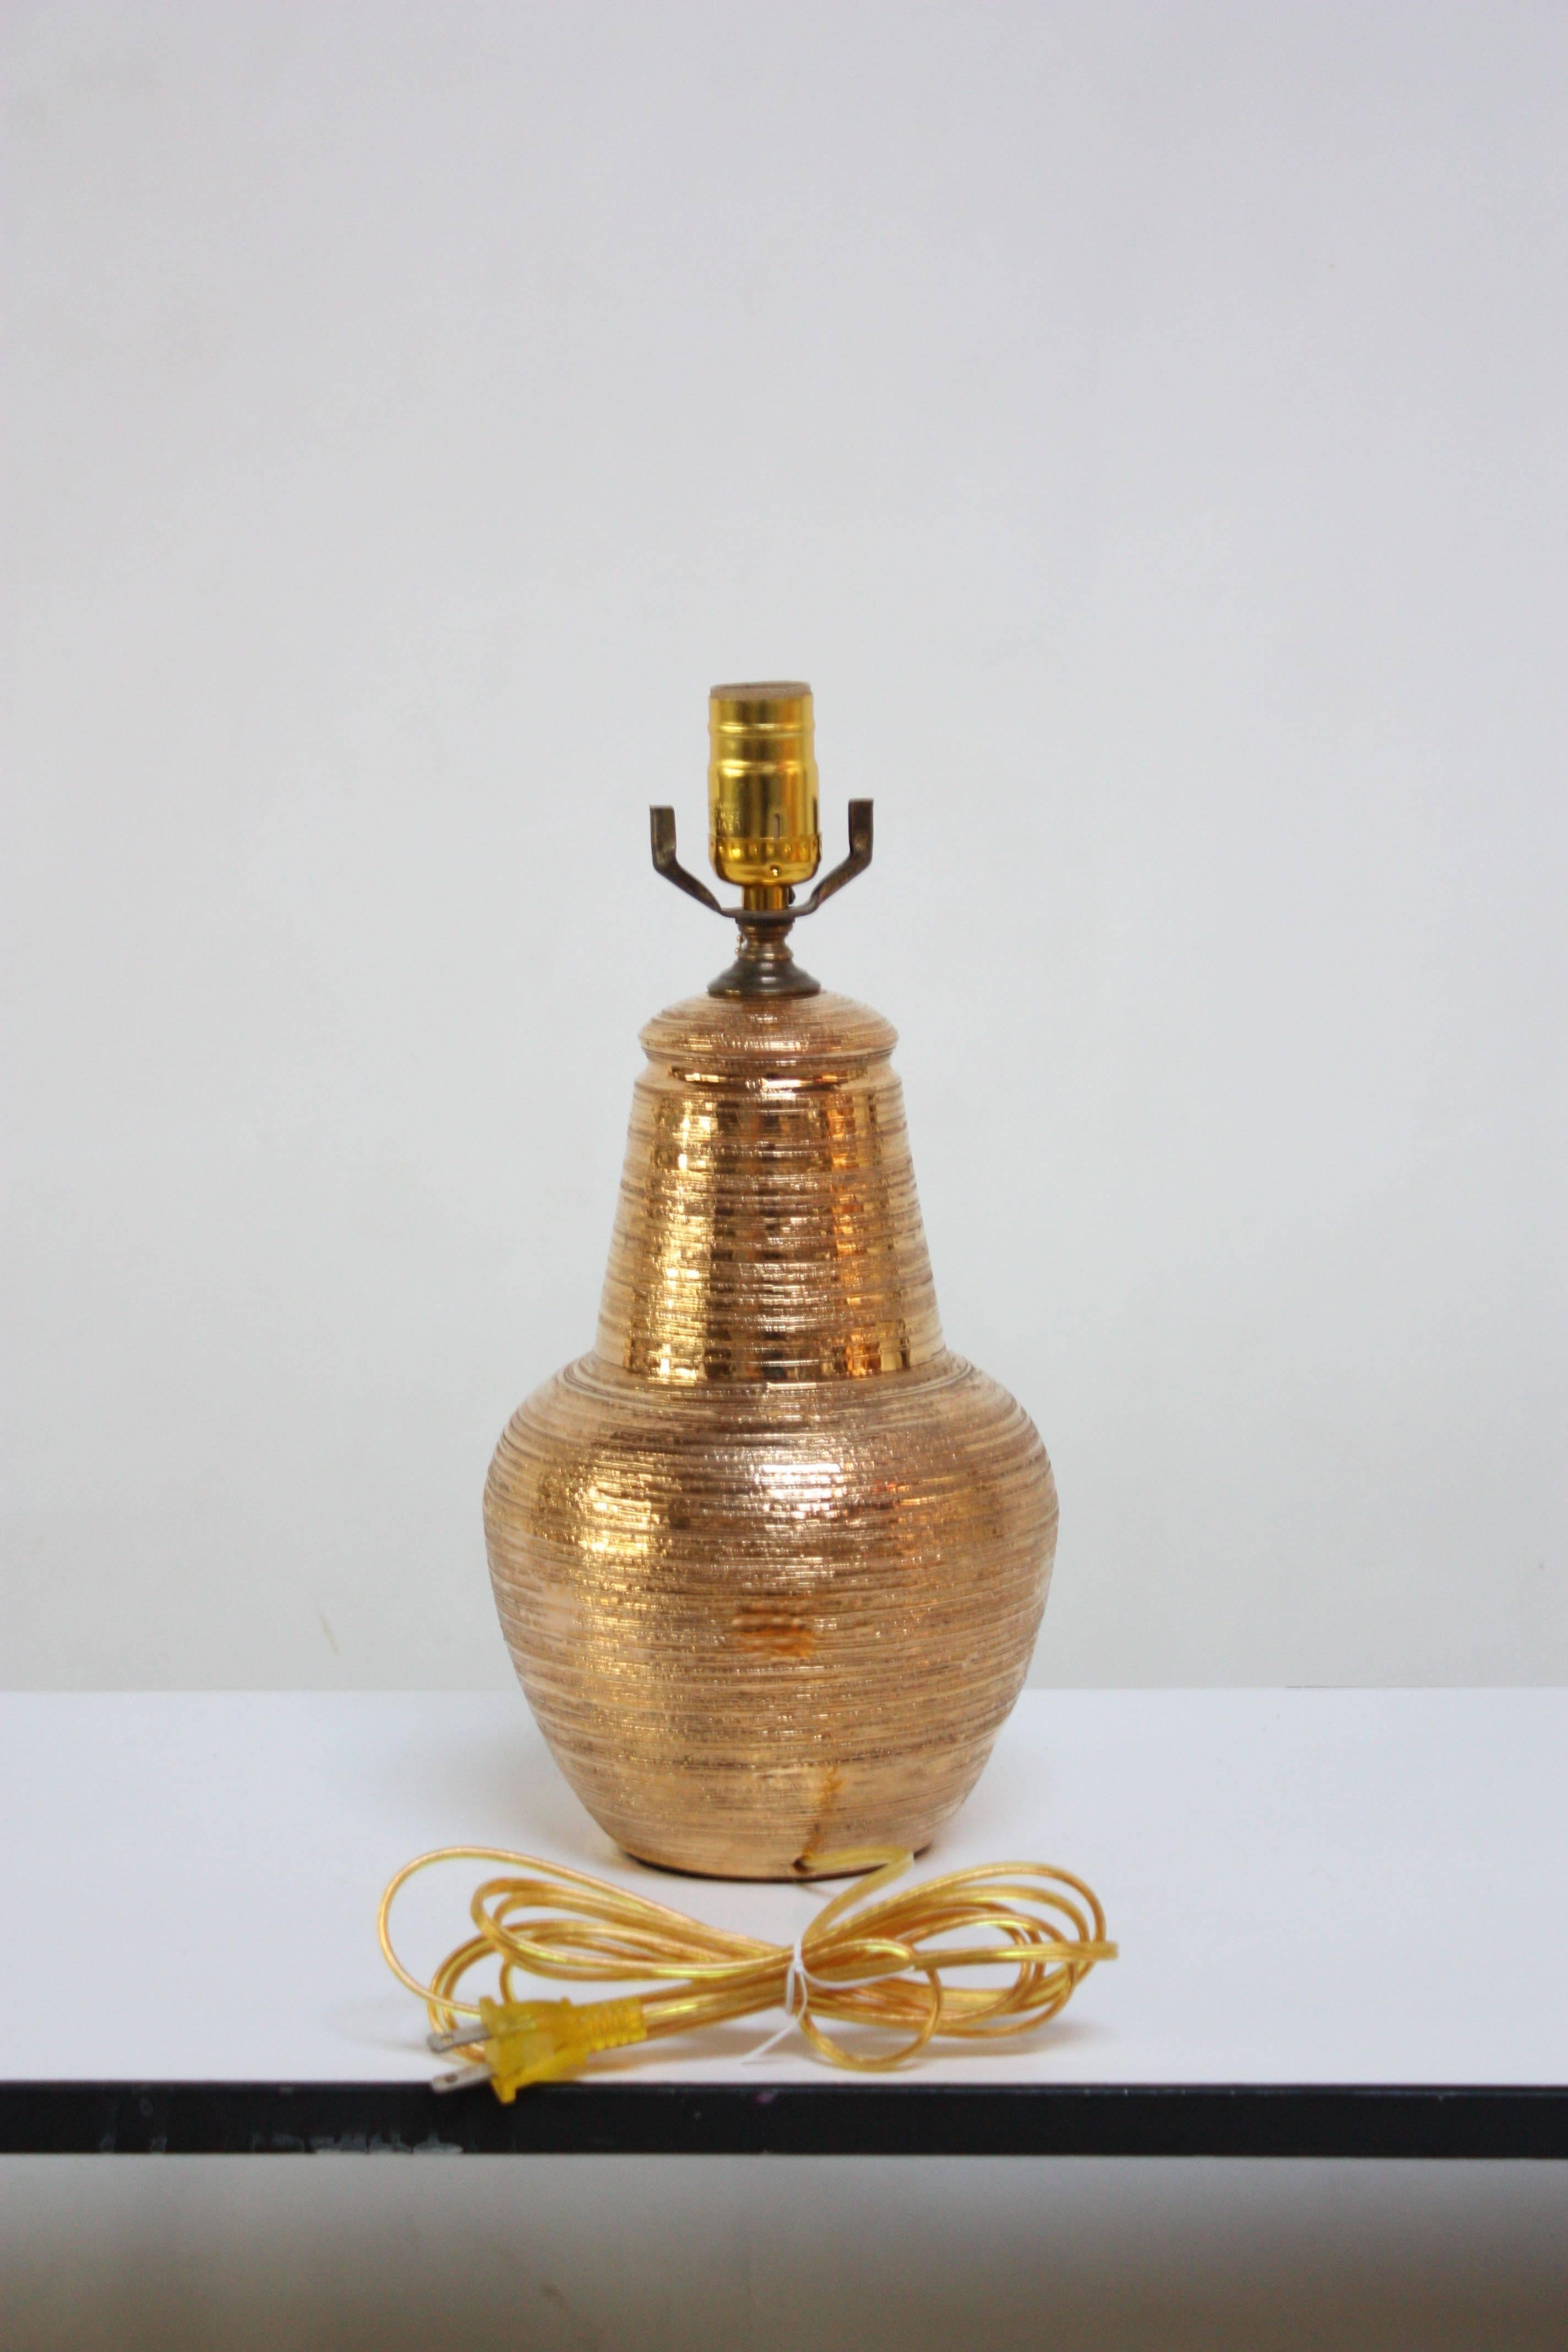 Lampe de table en céramique italienne en glaçure dorée texturée. Cette lampe en céramique italienne à la texture lourde présente une décoration appliquée 